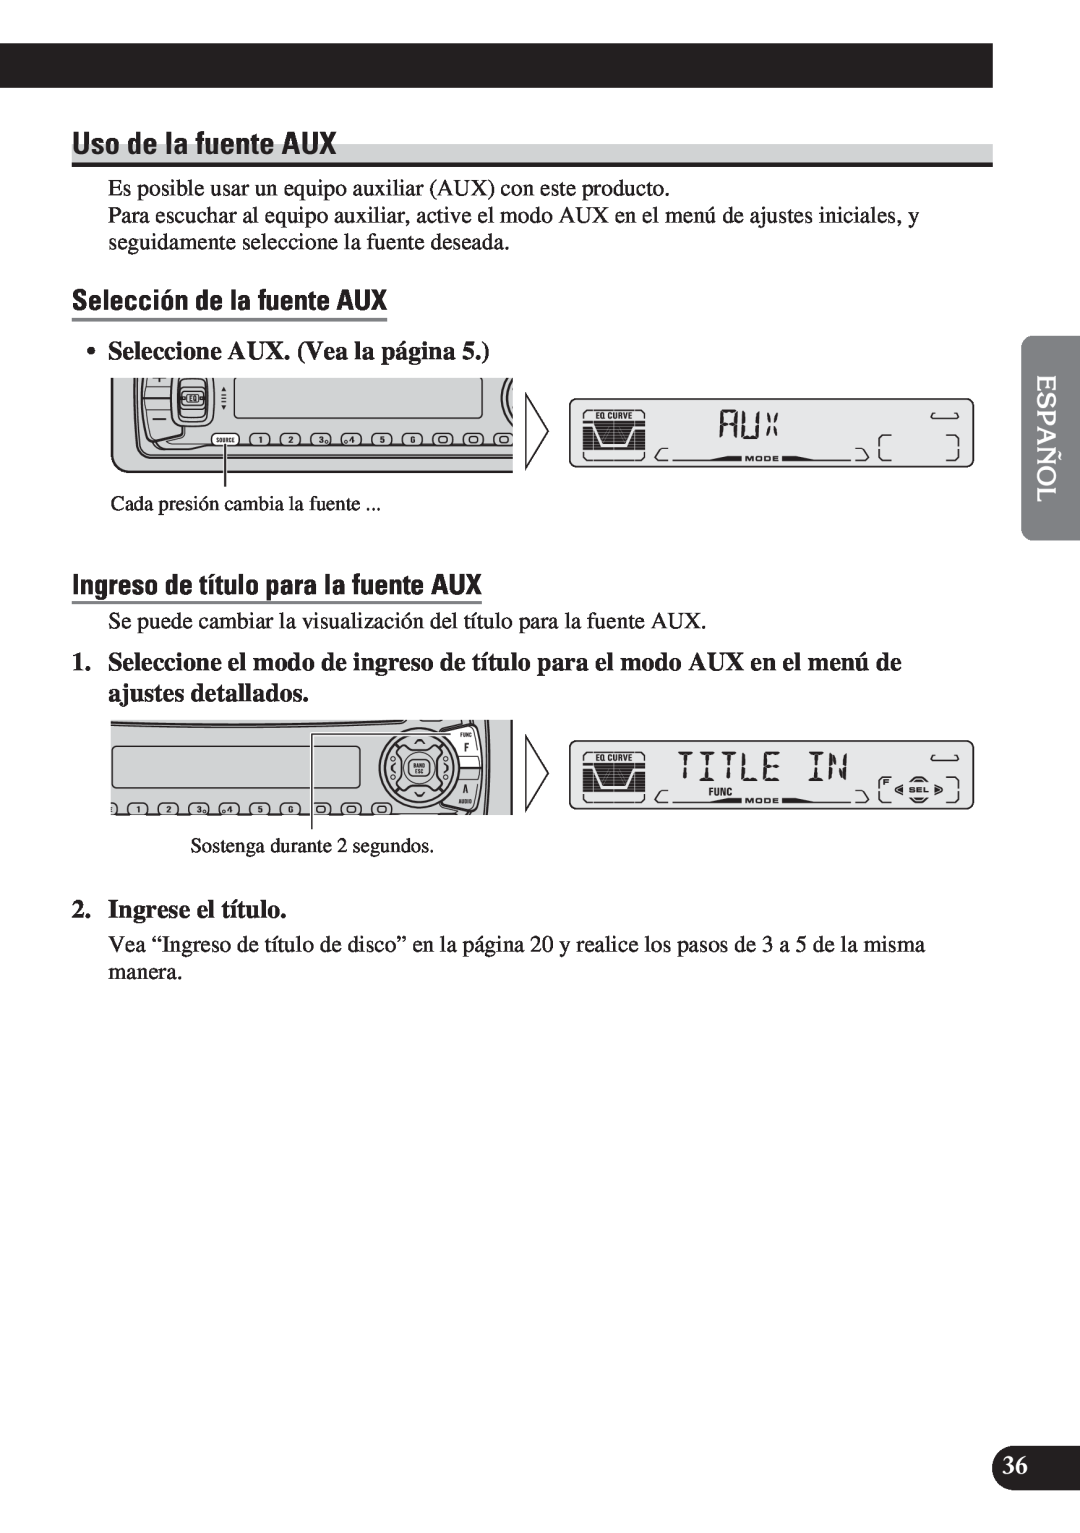 Pioneer DEH-P3150 operation manual Uso de la fuente AUX, Selección de la fuente AUX, Ingreso de título para la fuente AUX 